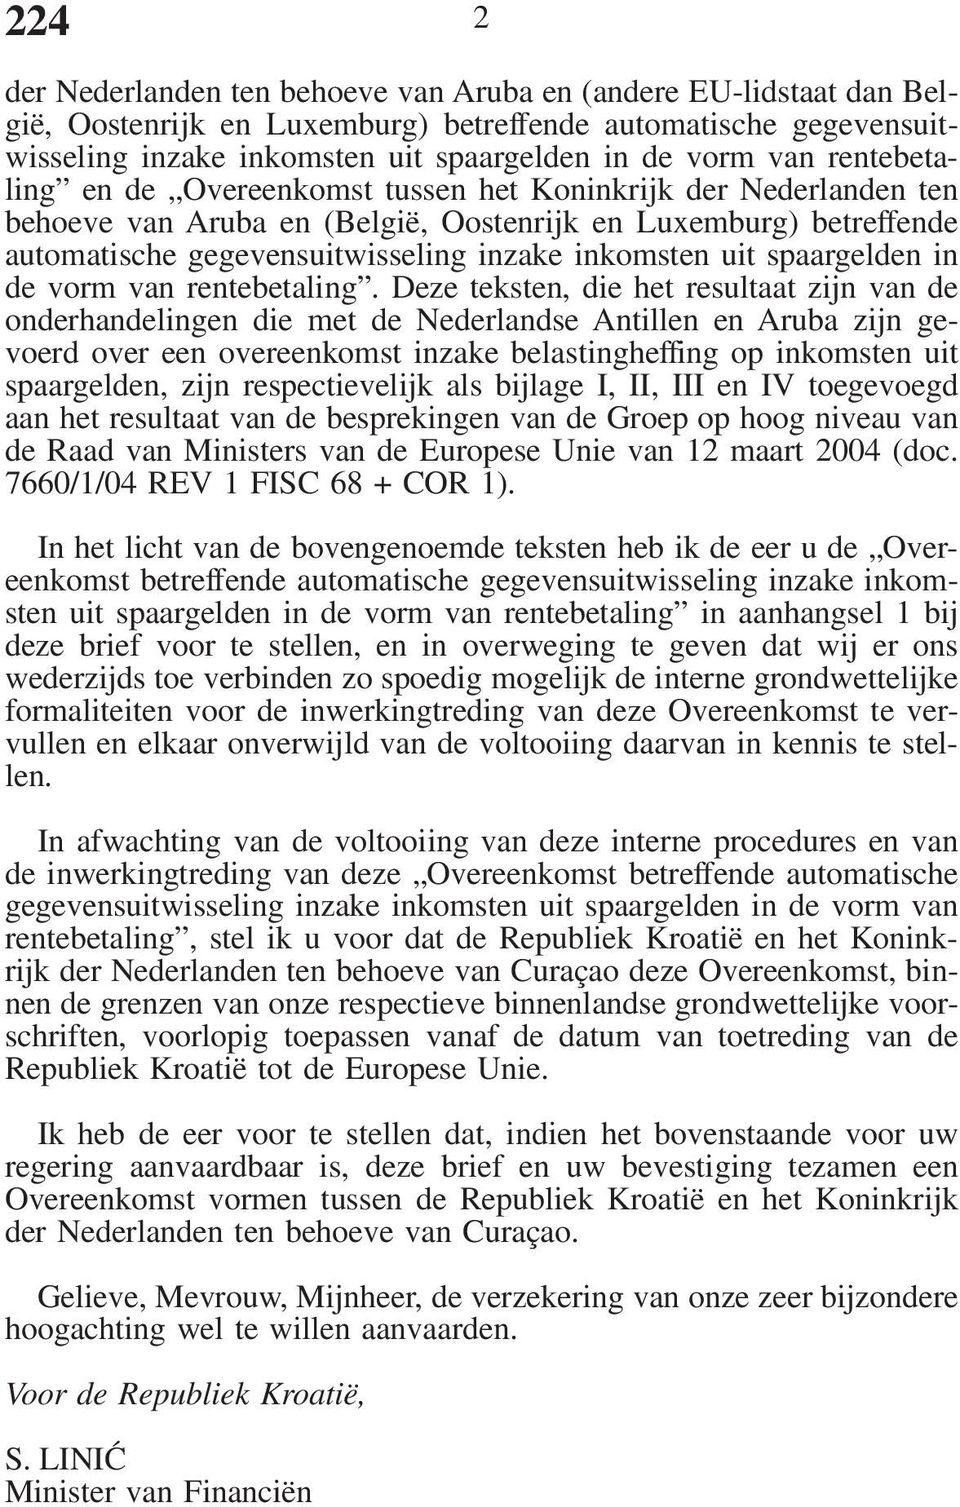 Deze teksten, die het resultaat zijn van de onderhandelingen die met de Nederlandse Antillen en Aruba zijn gevoerd over een overeenkomst inzake belastingheffing op inkomsten uit spaargelden, zijn